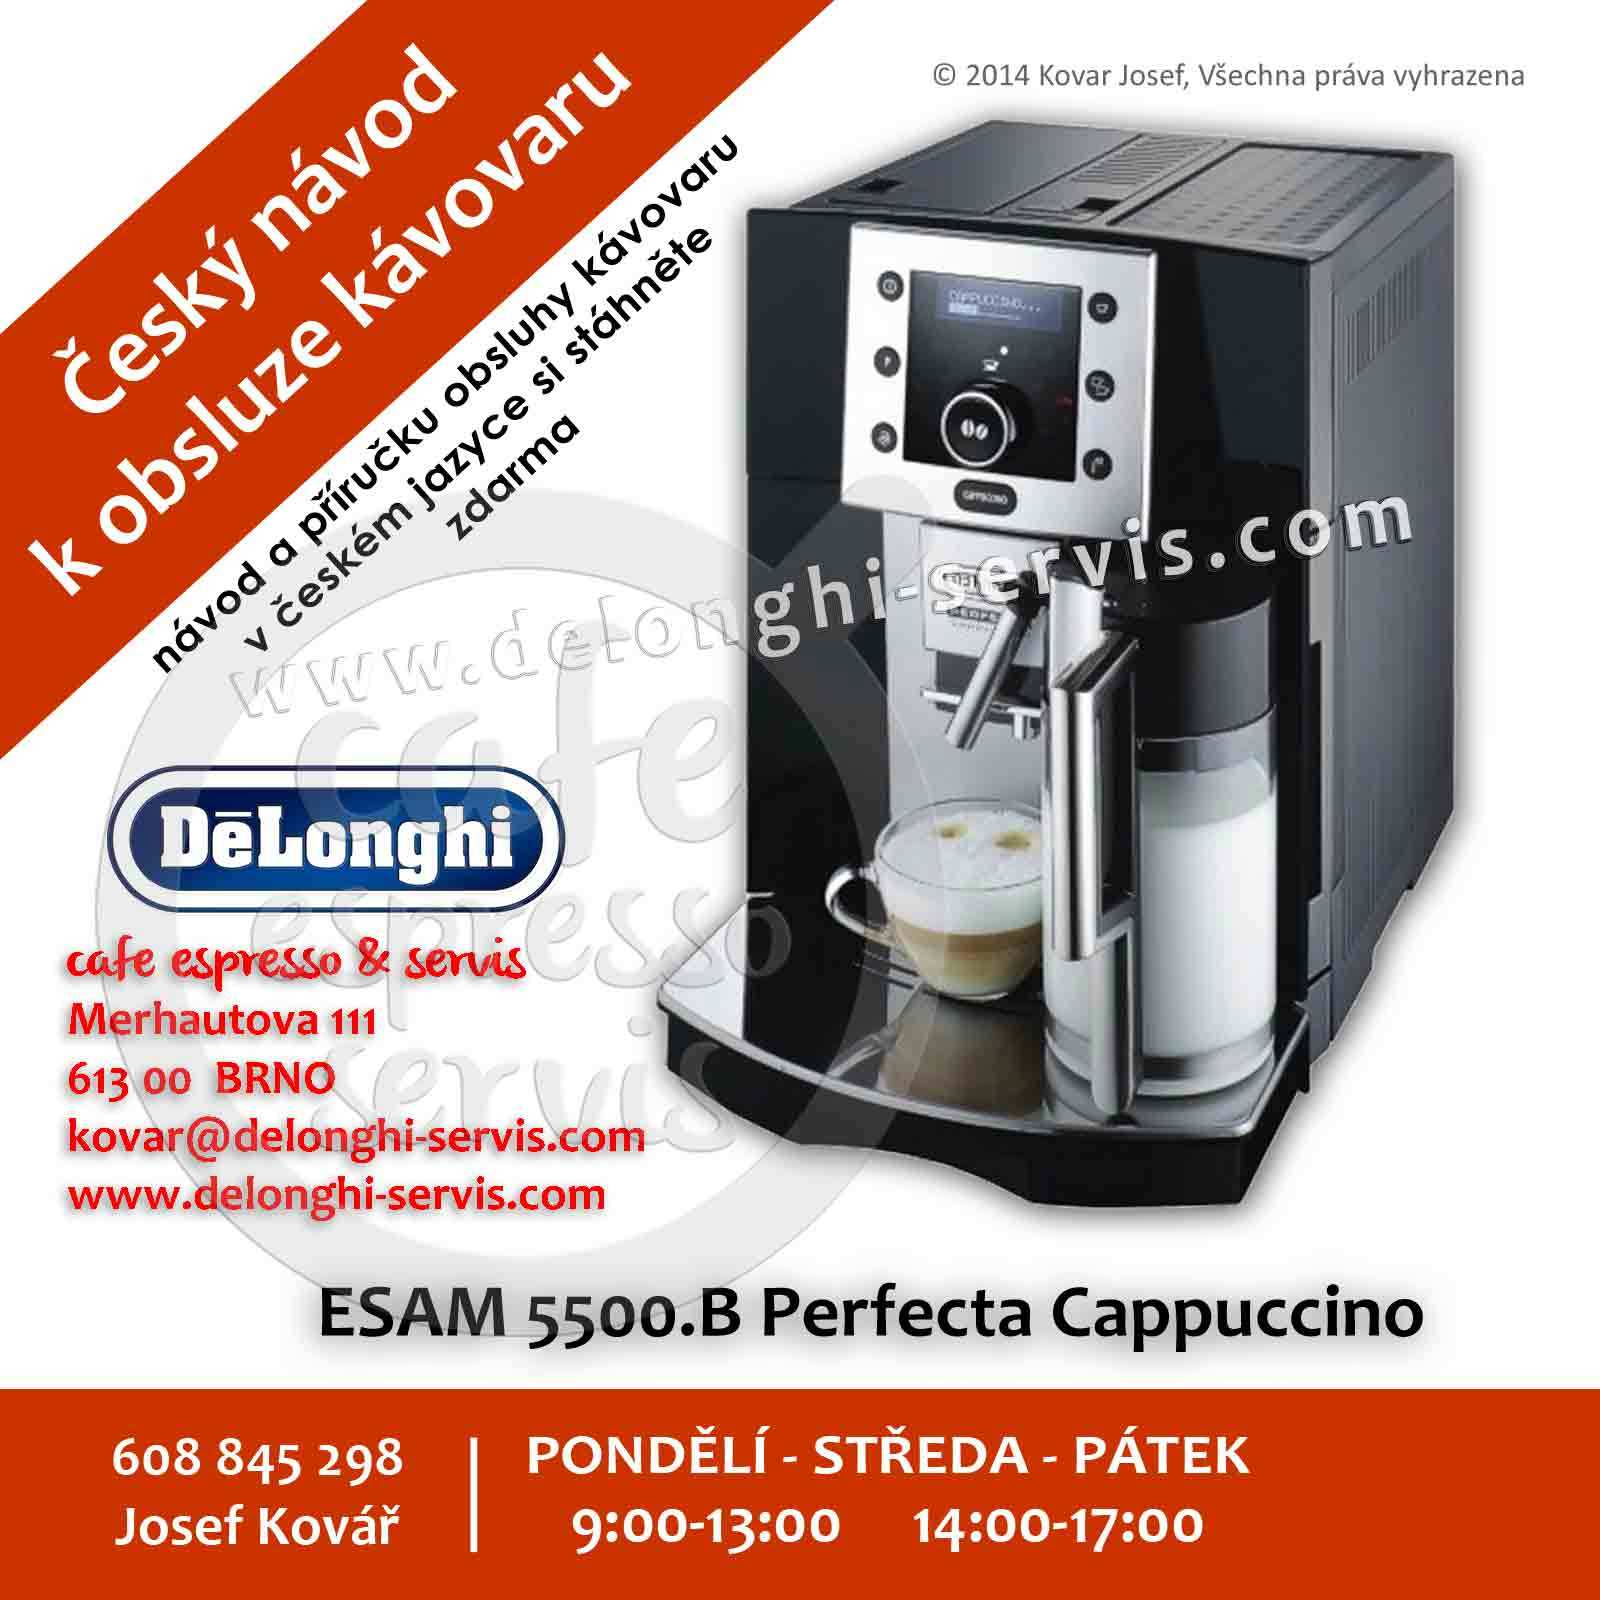 Manuál, návod a příručka obsluhy CZ v českém jazyce pro automatický espresso kávovar DeLonghi ESAM 5500 Perfecta